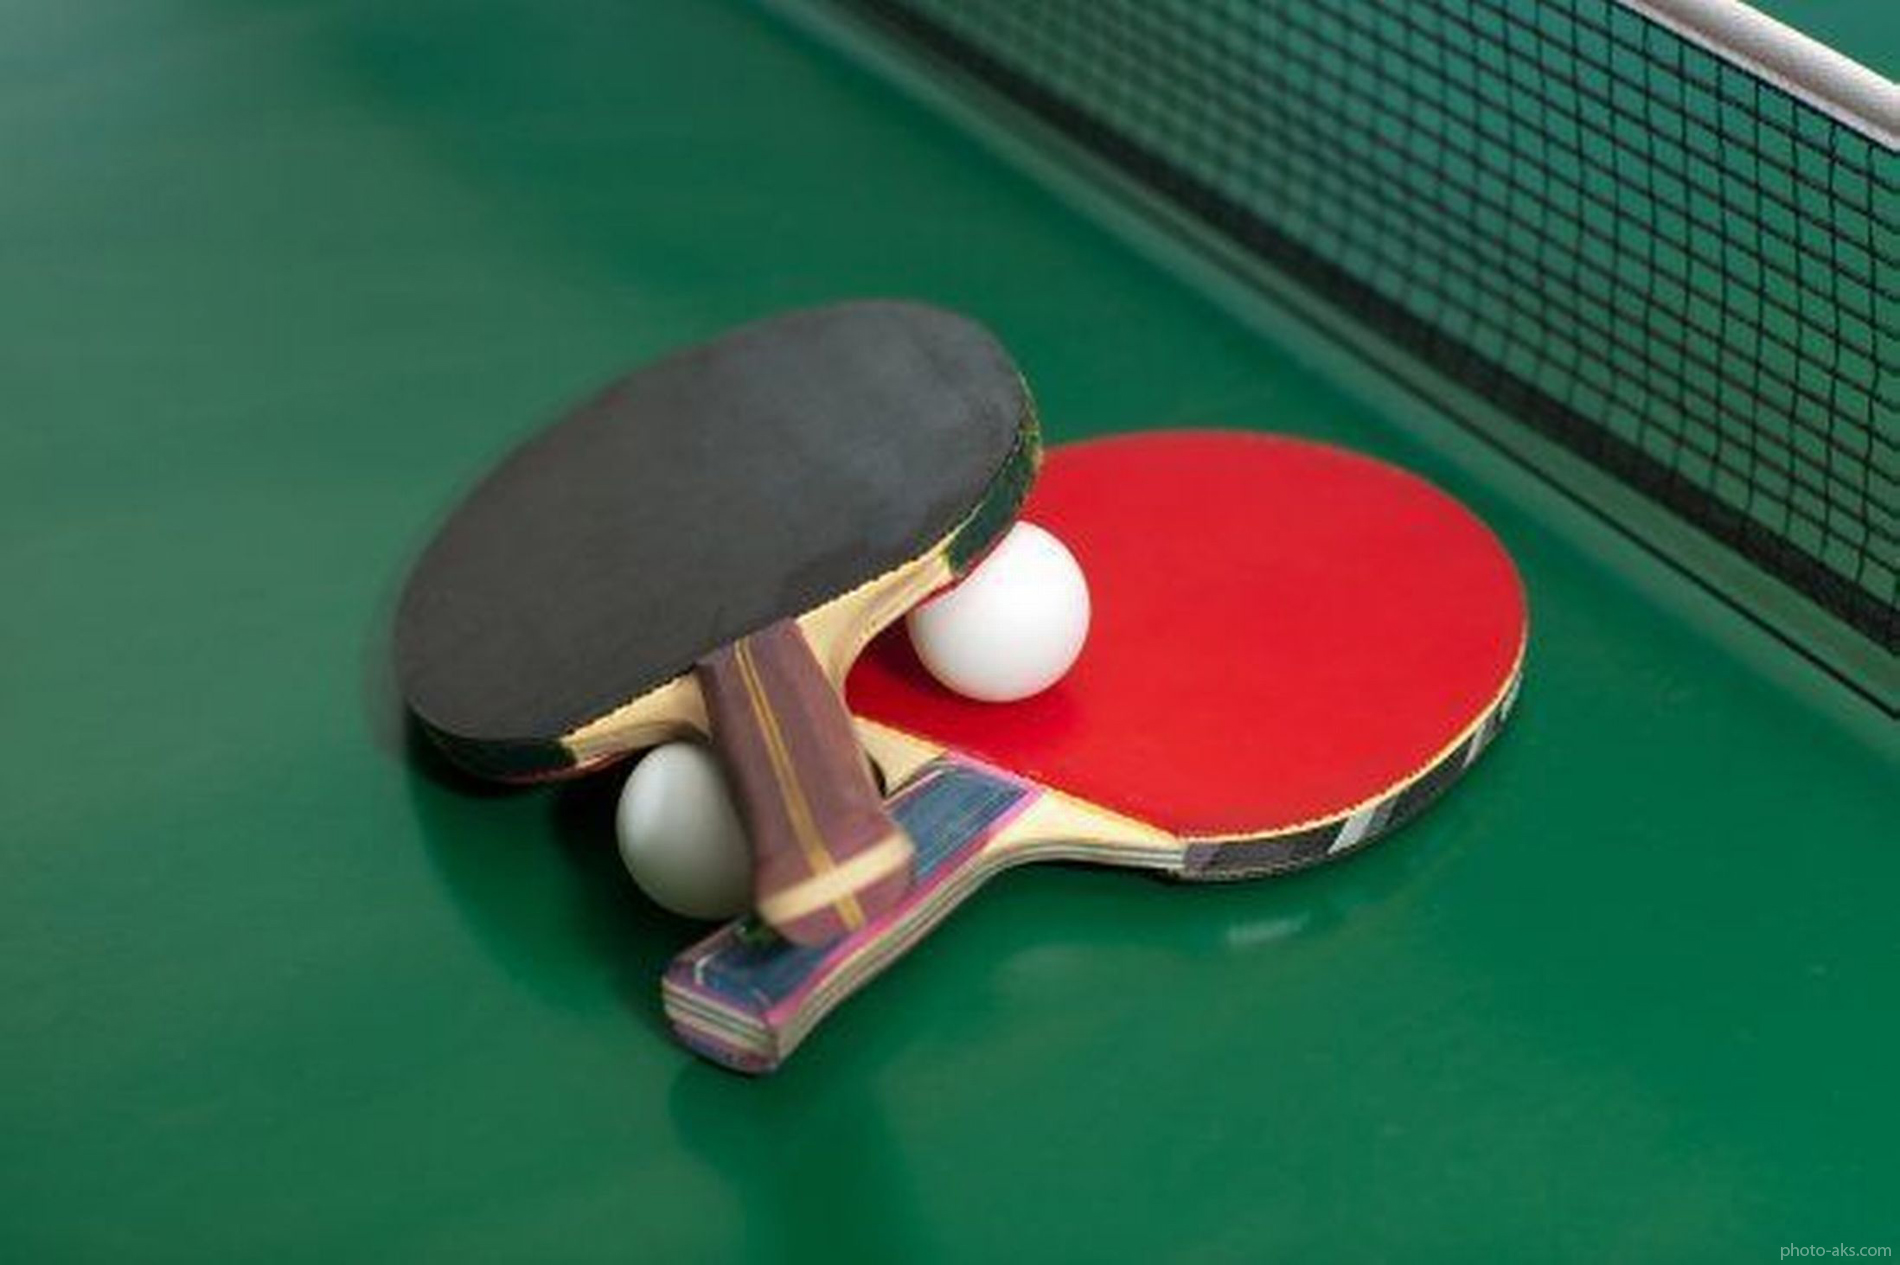 انصراف شهدای آتش نشان از لیک تنیس روی میز / لغو بازی دانشگاه آزاد